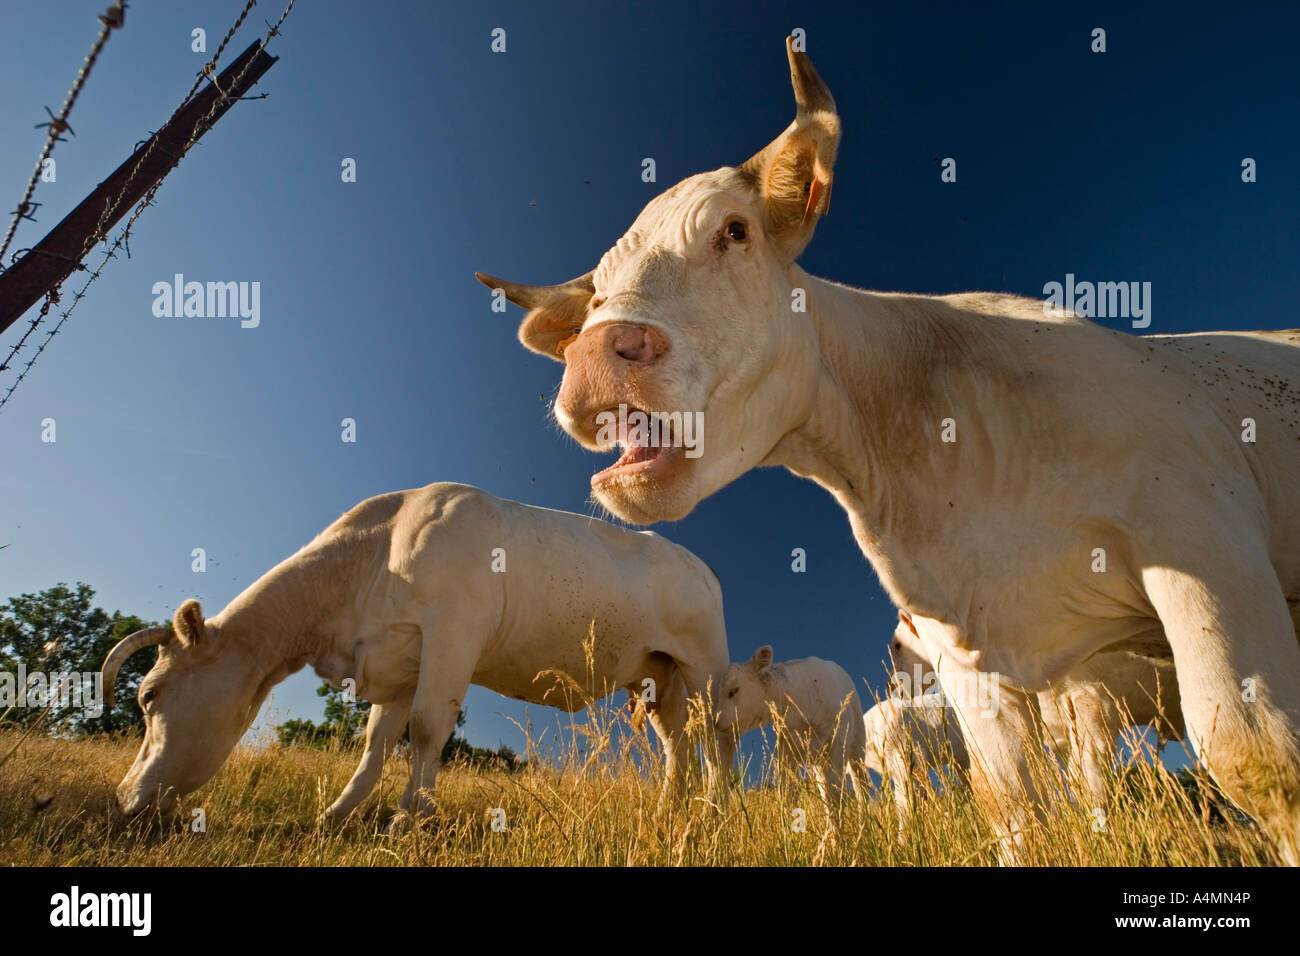 Vaches charolaises en Auvergne (France). Vaches (Bos taurus domesticus) de race Charolaise en Auvergne. Banque D'Images